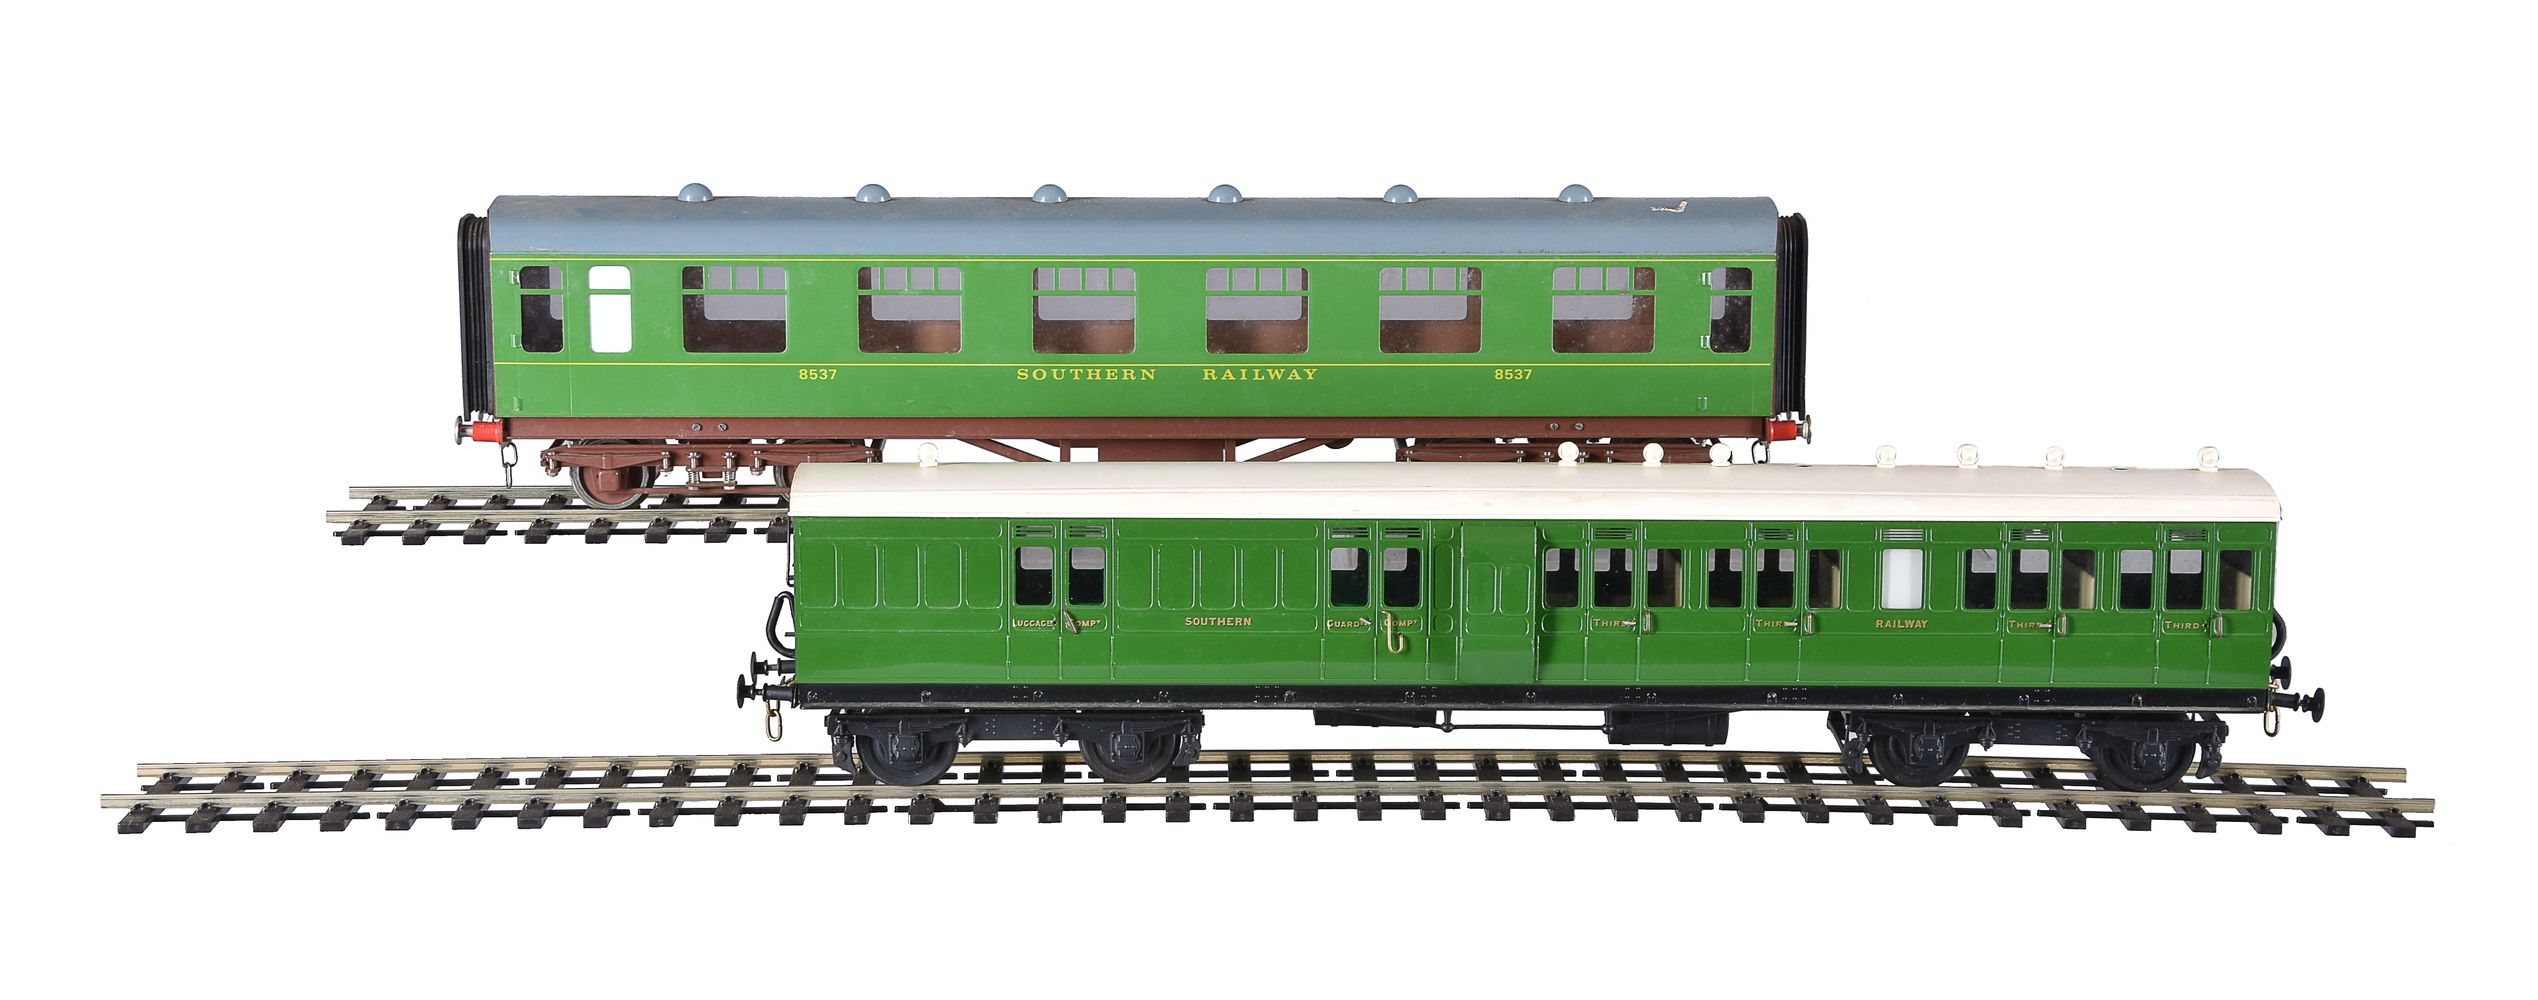 A collection of SR twin bogie suburban and corridor coaches